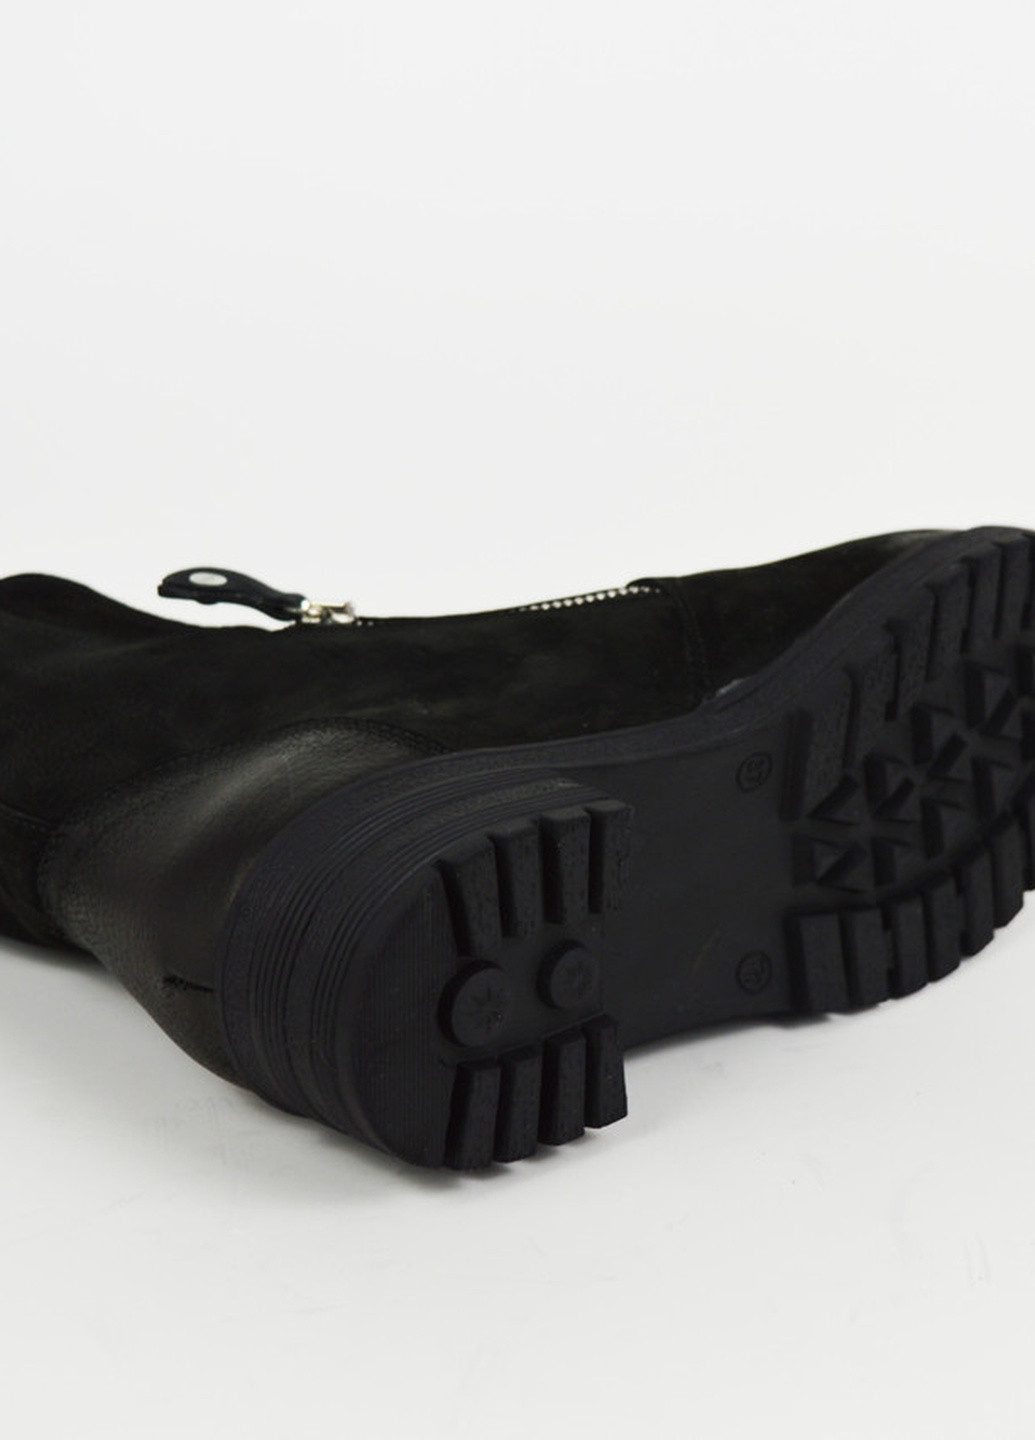 ботинки кожаные с брошью нубук Aquamarin из натурального нубука